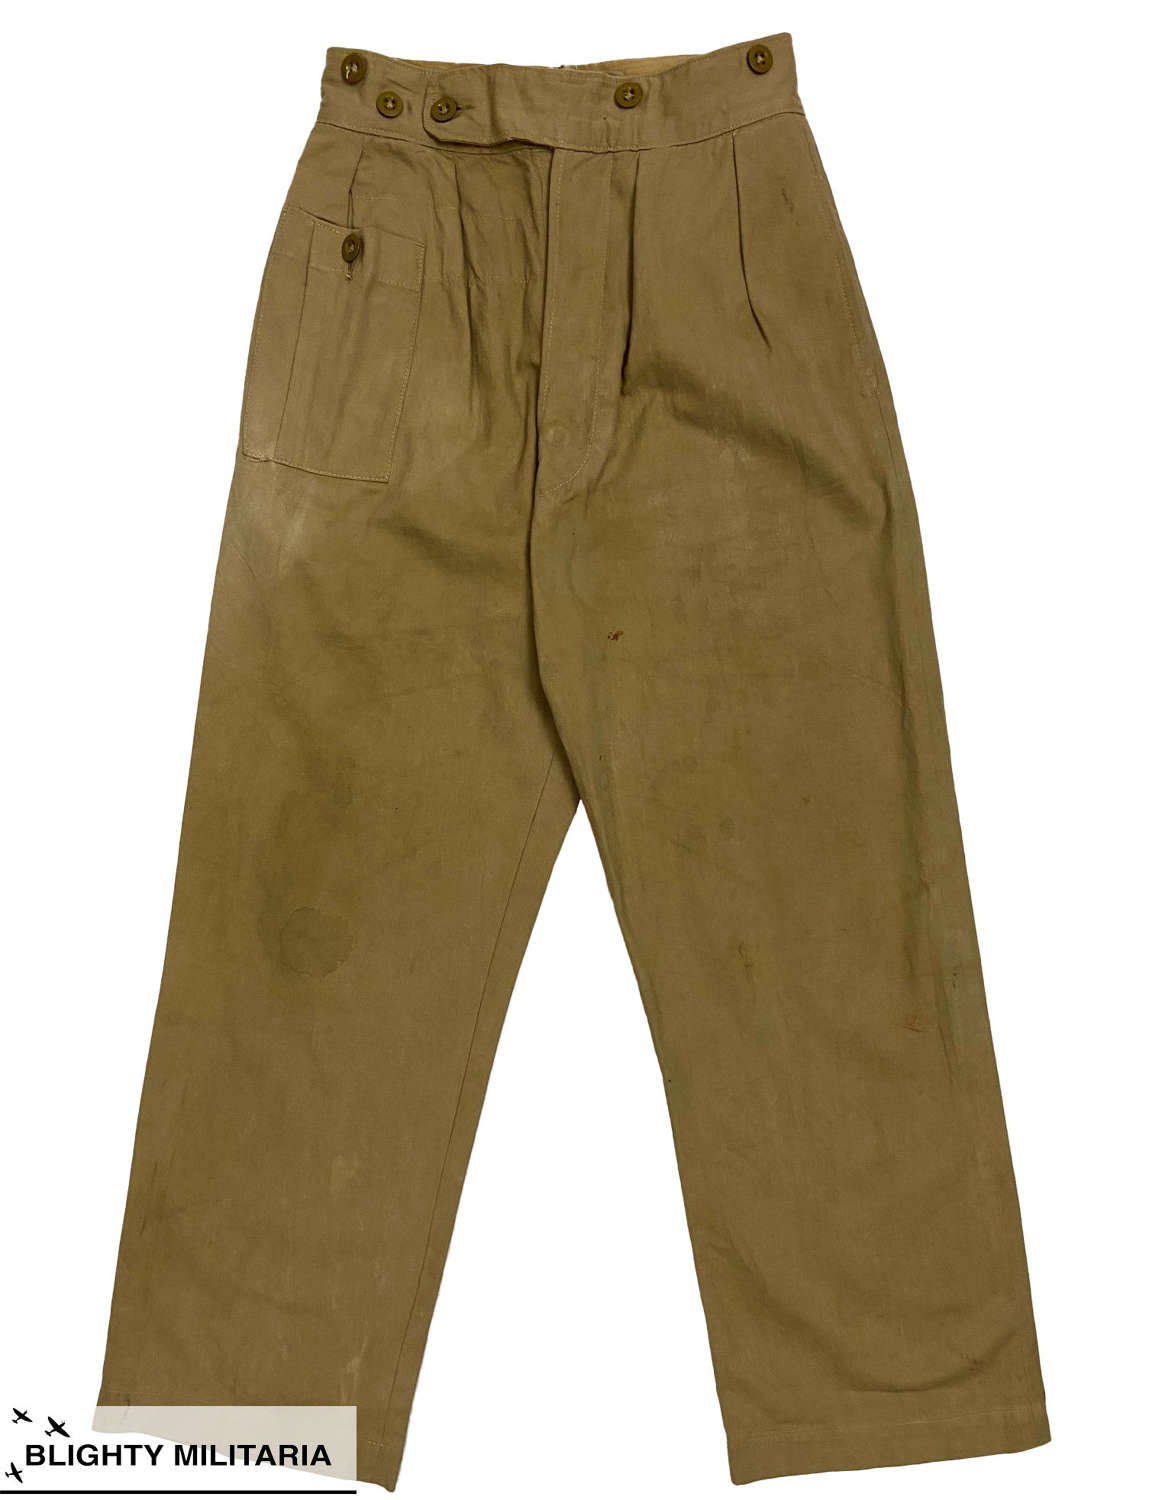 Original 1948 Dated 1942 Pattern British Khaki Drill Trousers - Size 3